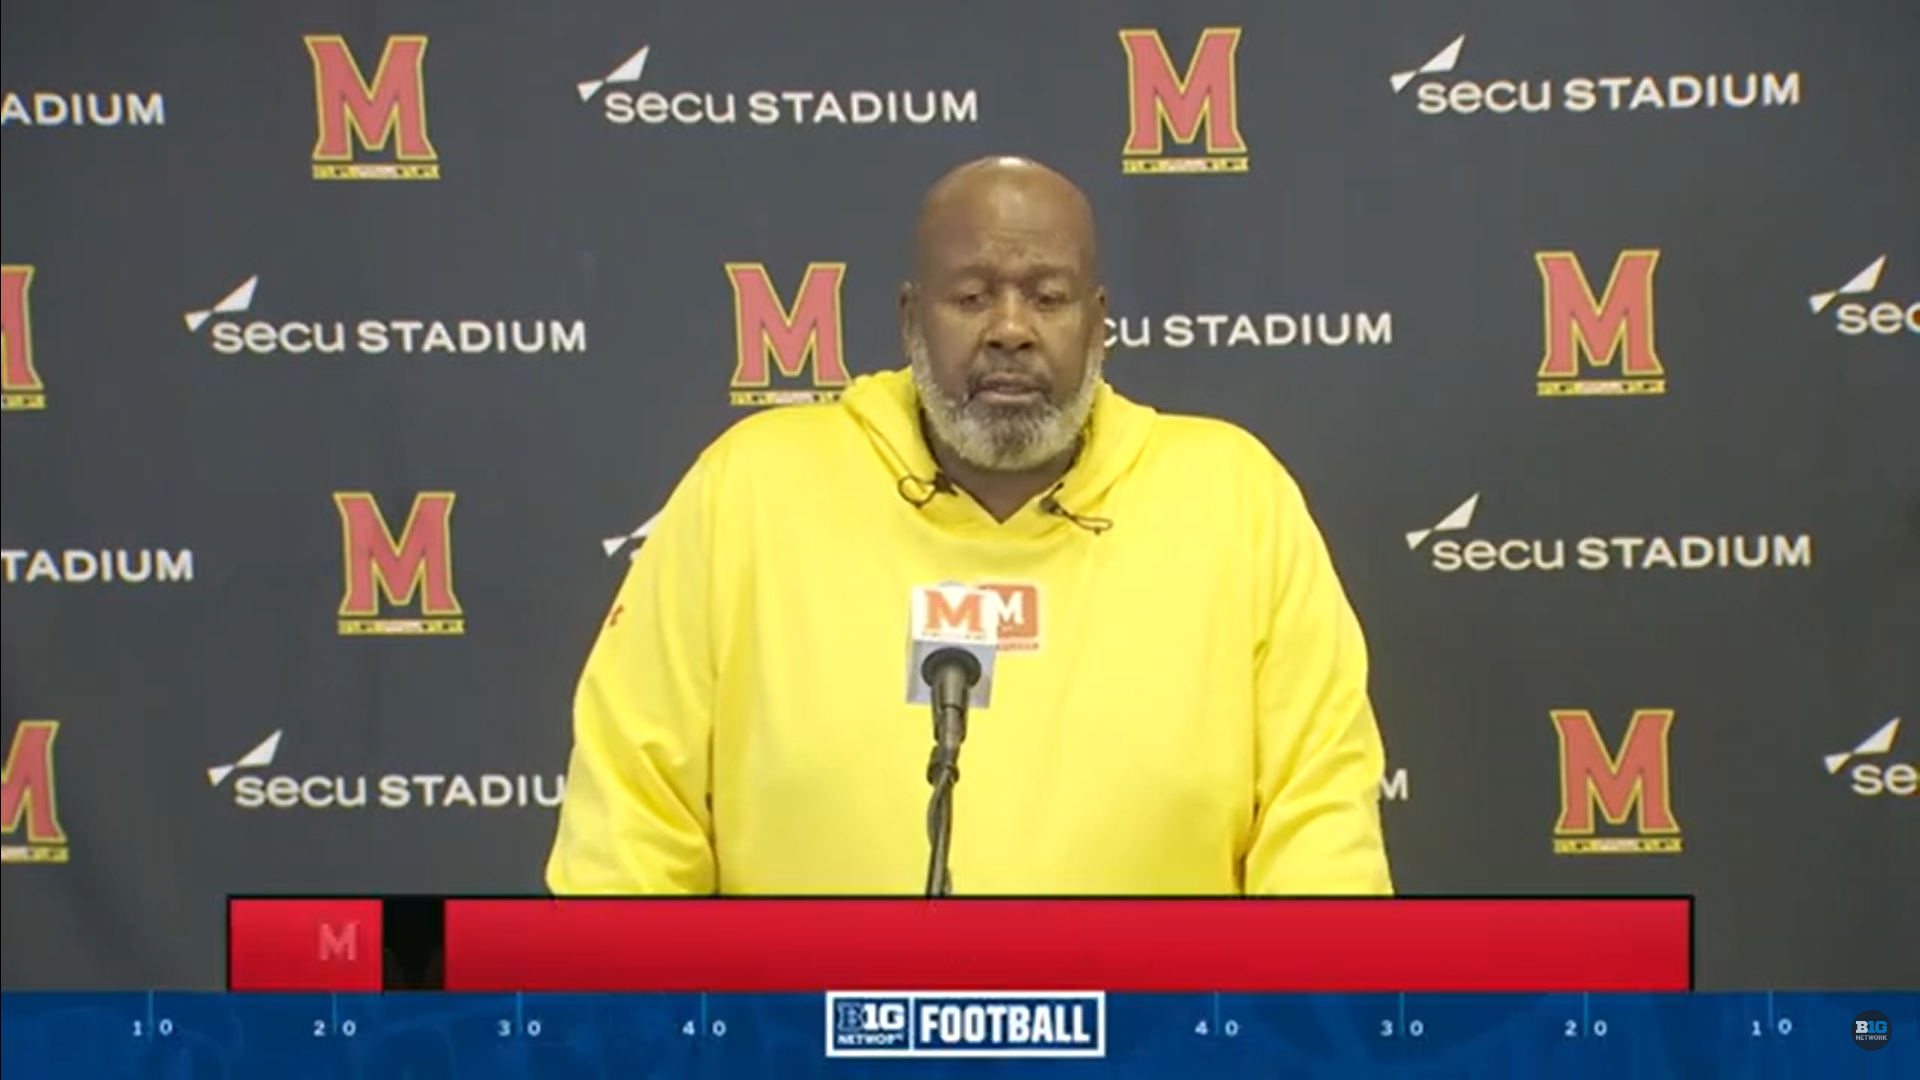 Mike Locksley says Maryland is preparing to get MSU’s best shot in Week 4